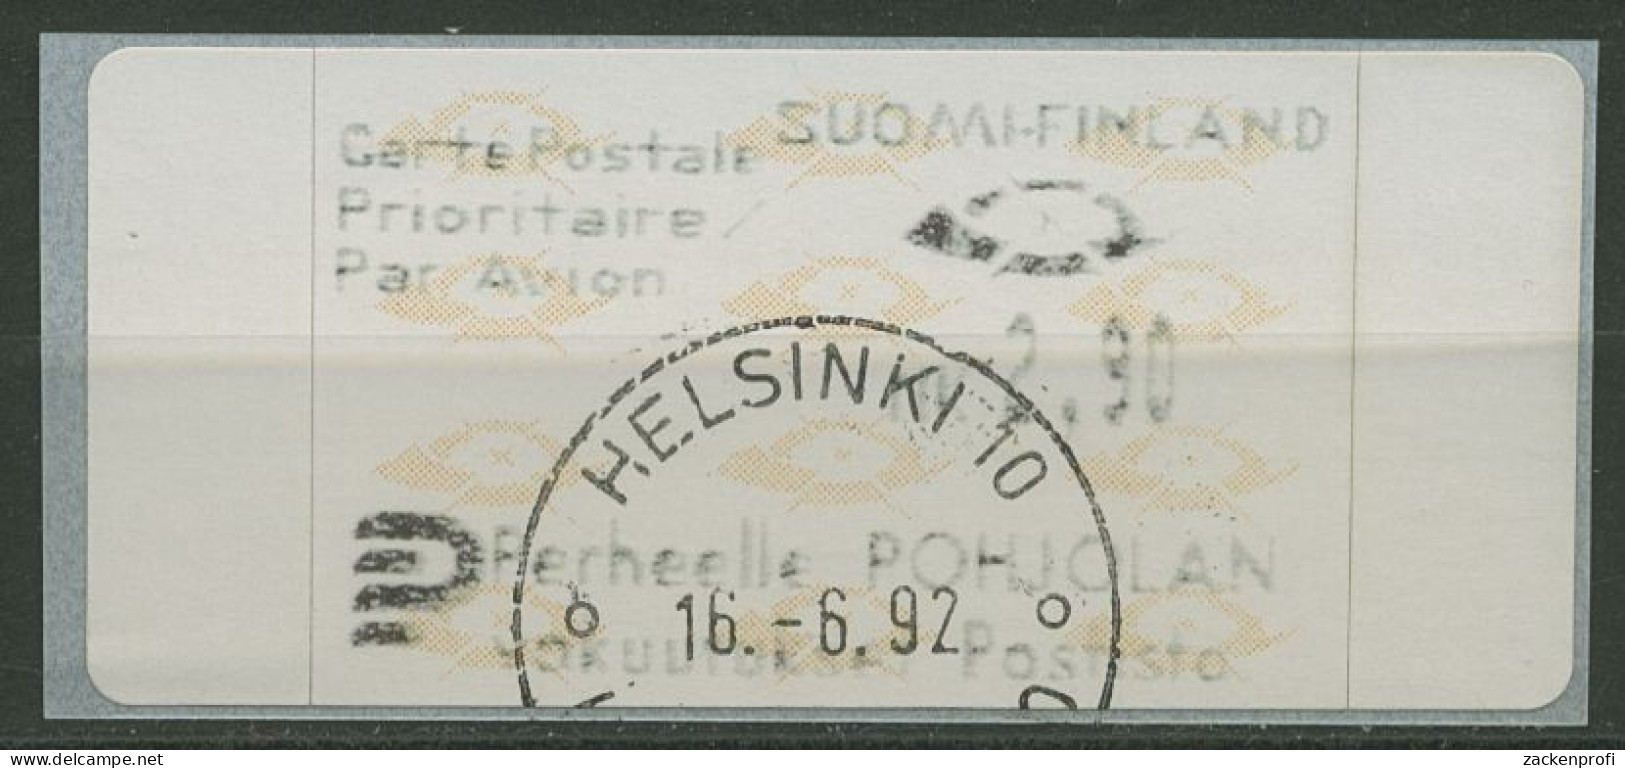 Finnland Automatenmarken 1992 Posthörner Einzelwert ATM 12.3 Z3 Gestempelt - Machine Labels [ATM]